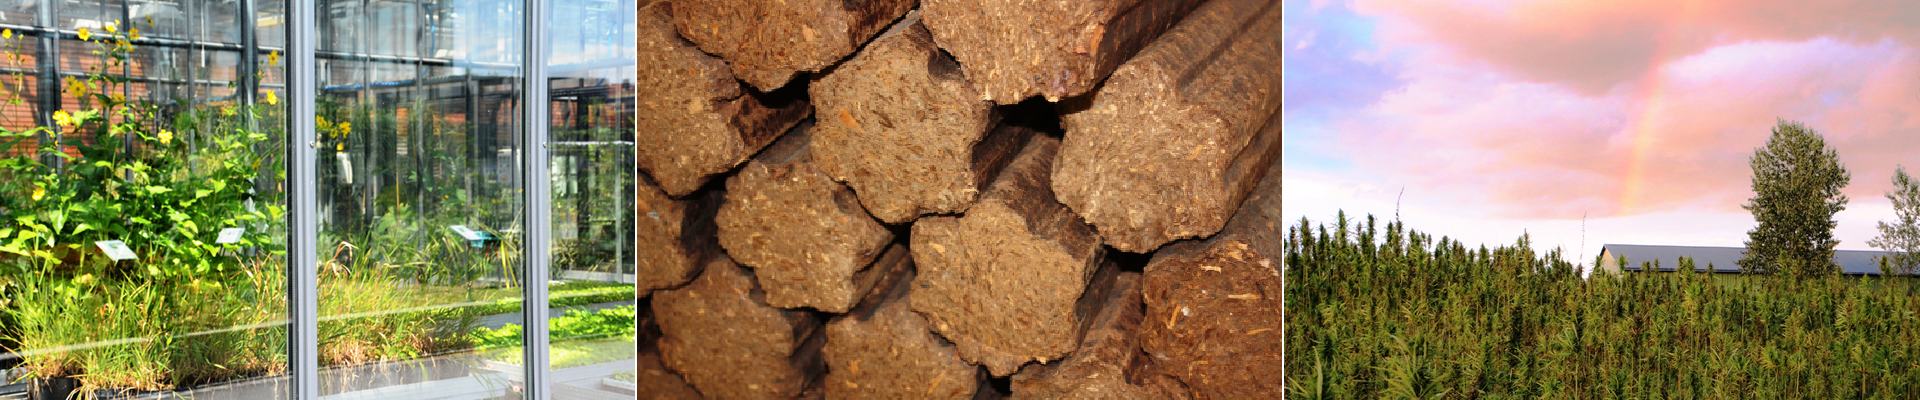 Biomasse-Nachhaltigkeitszertifizierung leicht gemacht